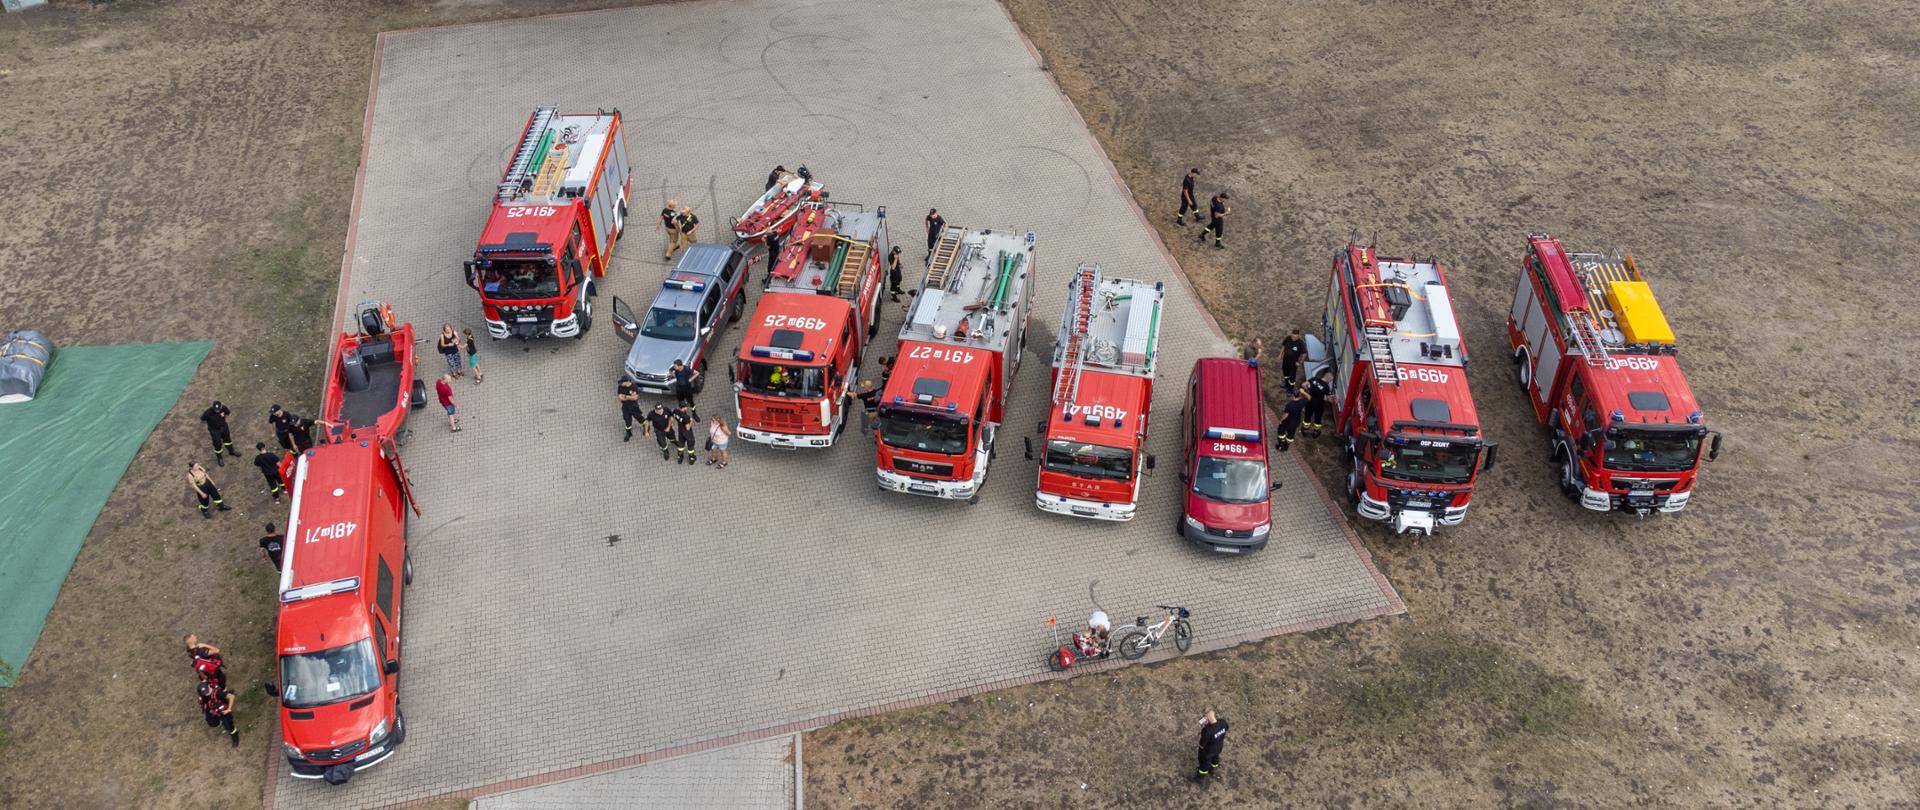 Na placu manewrowym stoją pojazdy pożarnicze usytuowane w szeregu. Rozpoczynają się warsztaty z ratownictwa wodnego dla jednostek KSRG. Trwa omówienie przebiegu warsztatów. 